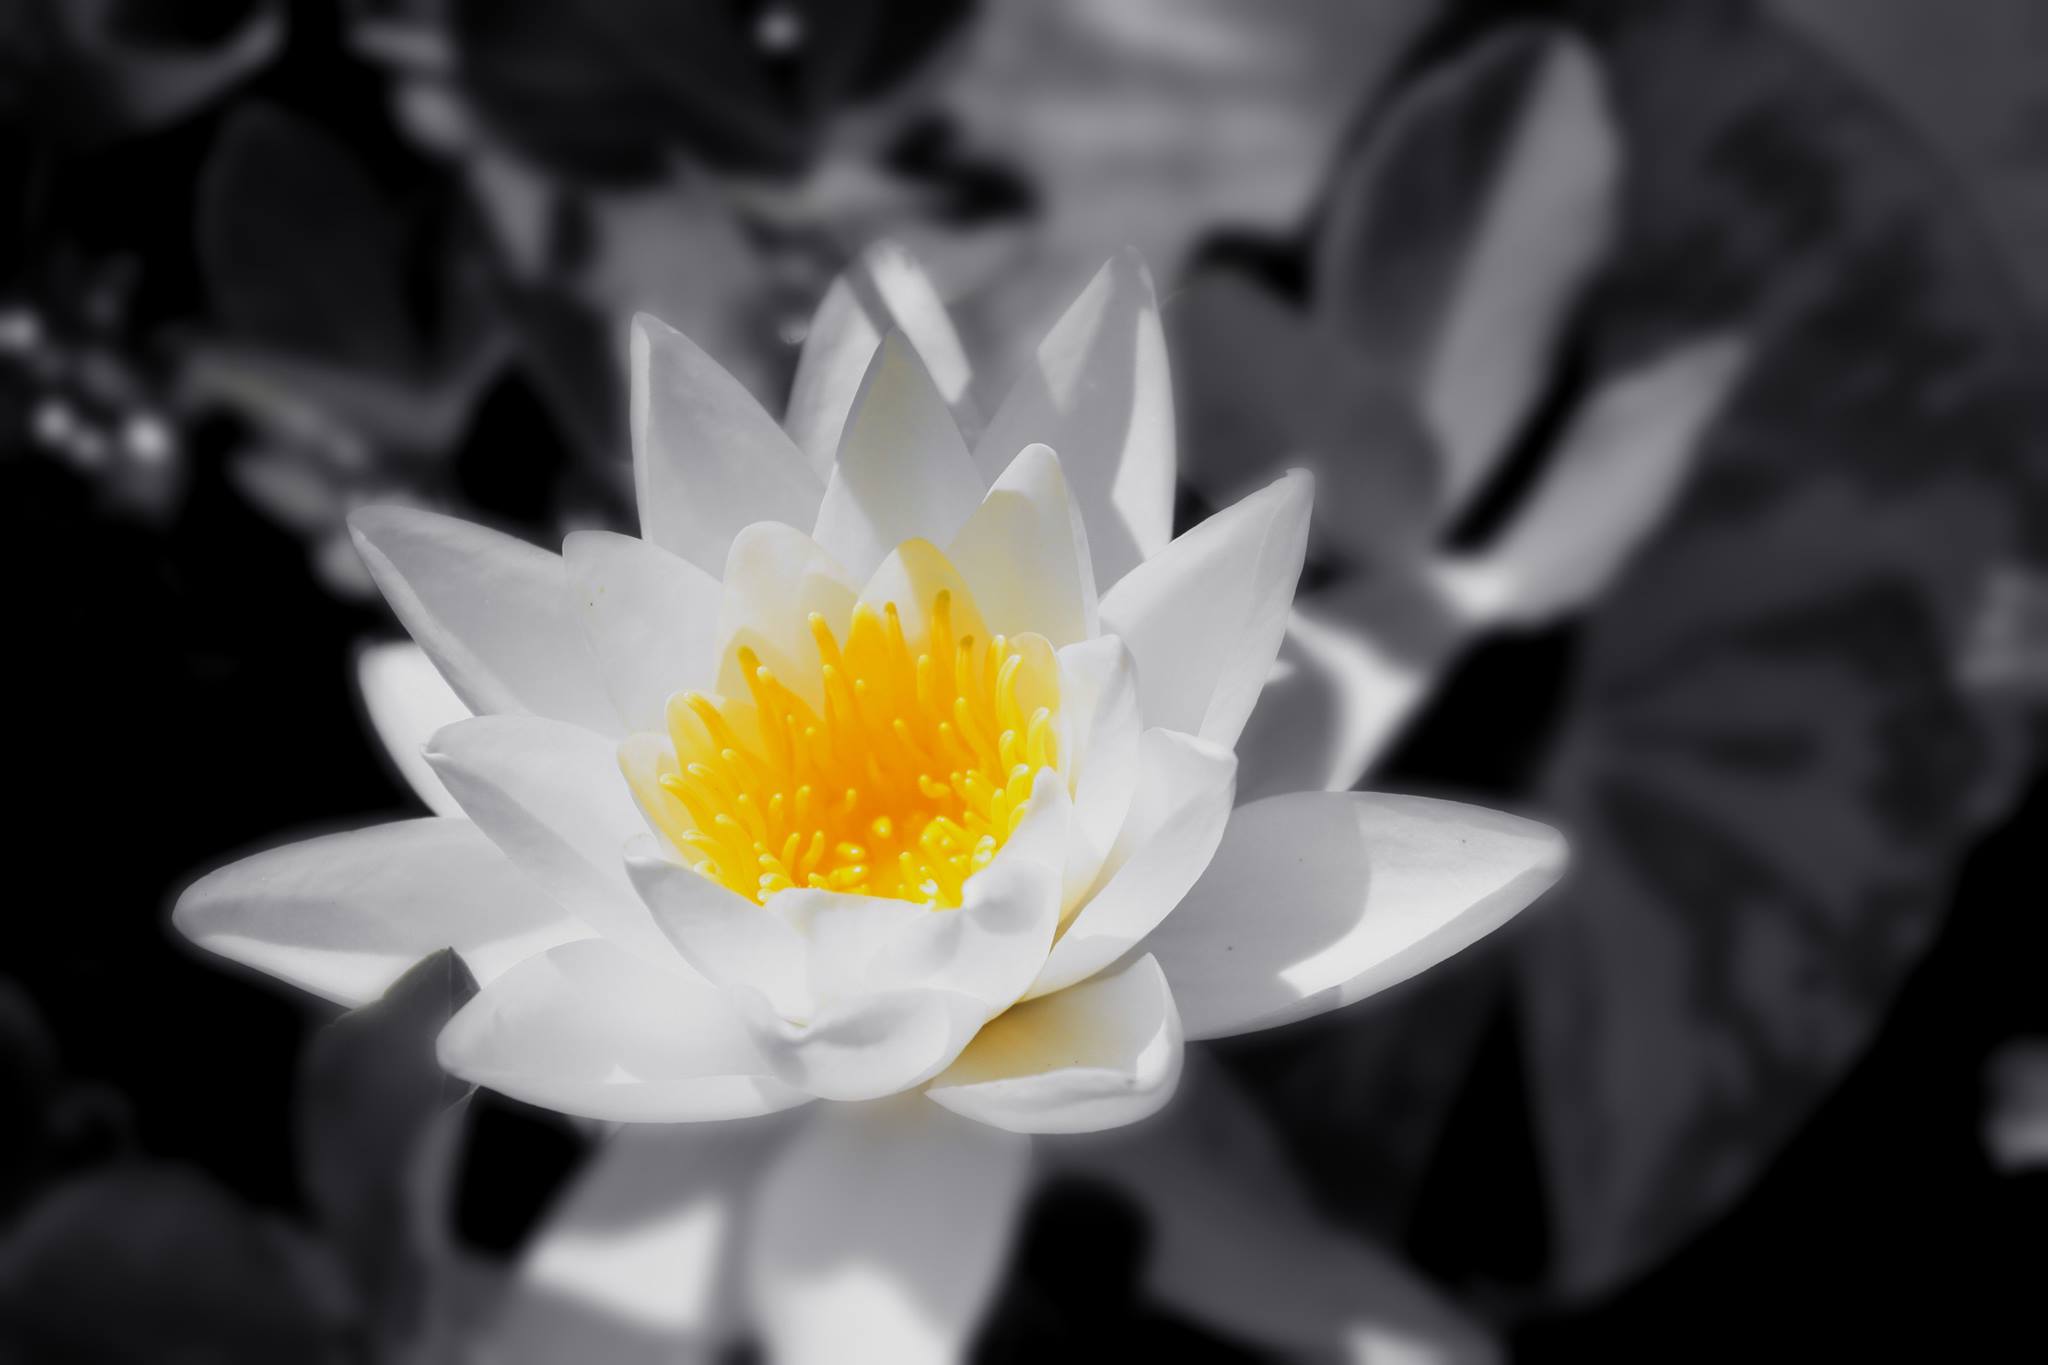 Hình ảnh về hoa Sen trắng nền đen